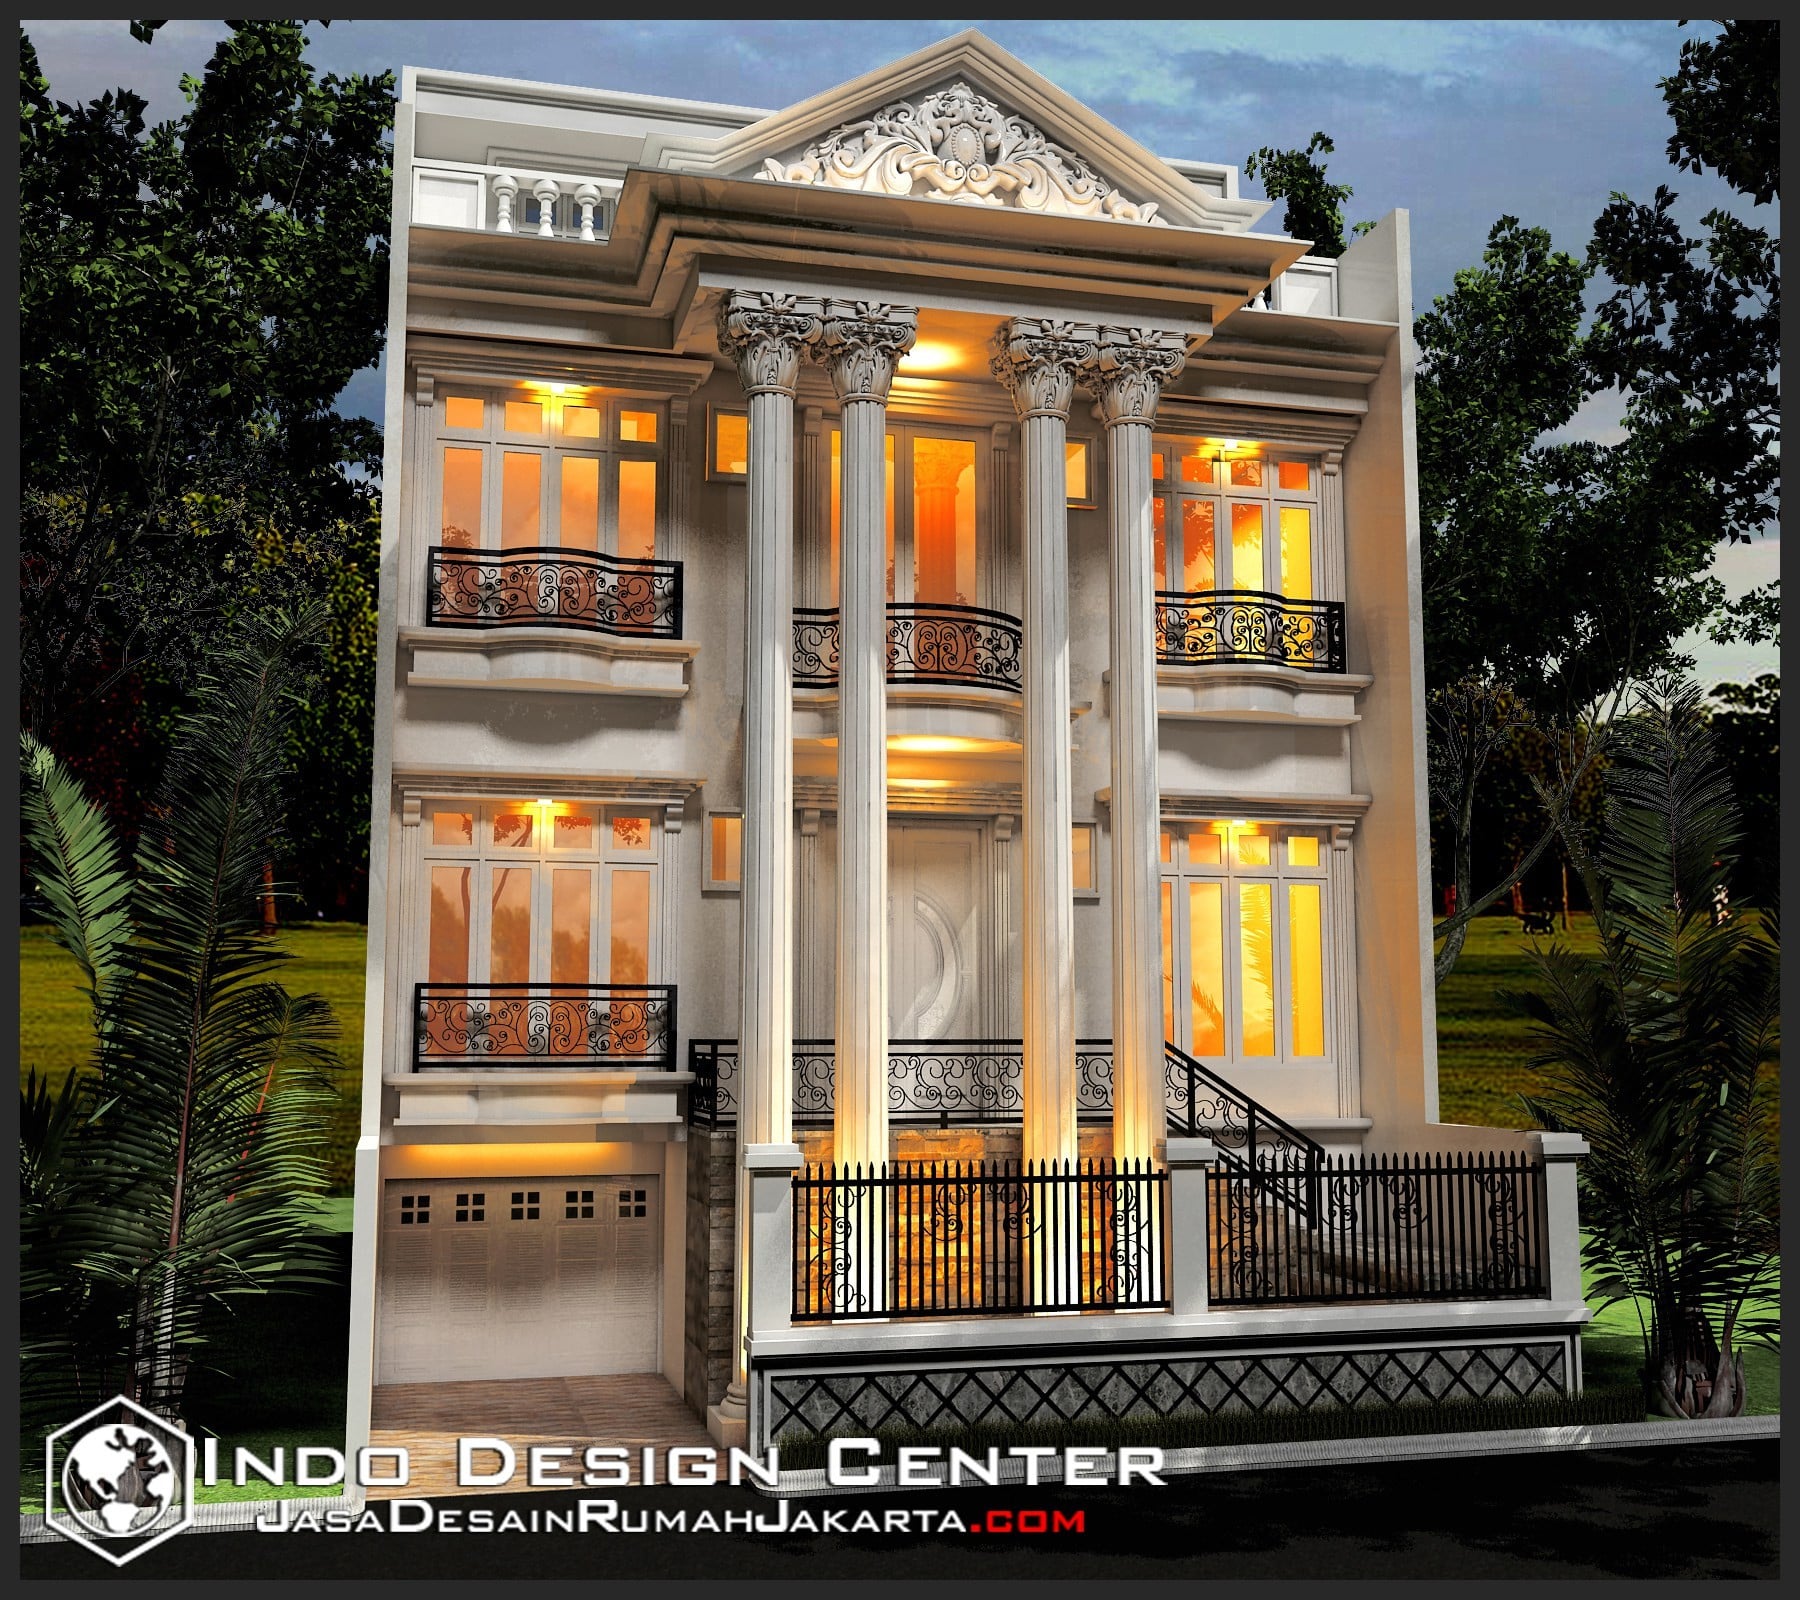 Epik Desain Rumah Mewah Eropa Minimalis 92 Untuk Ide Merombak Rumah Kecil untuk Desain Rumah Mewah Eropa Minimalis